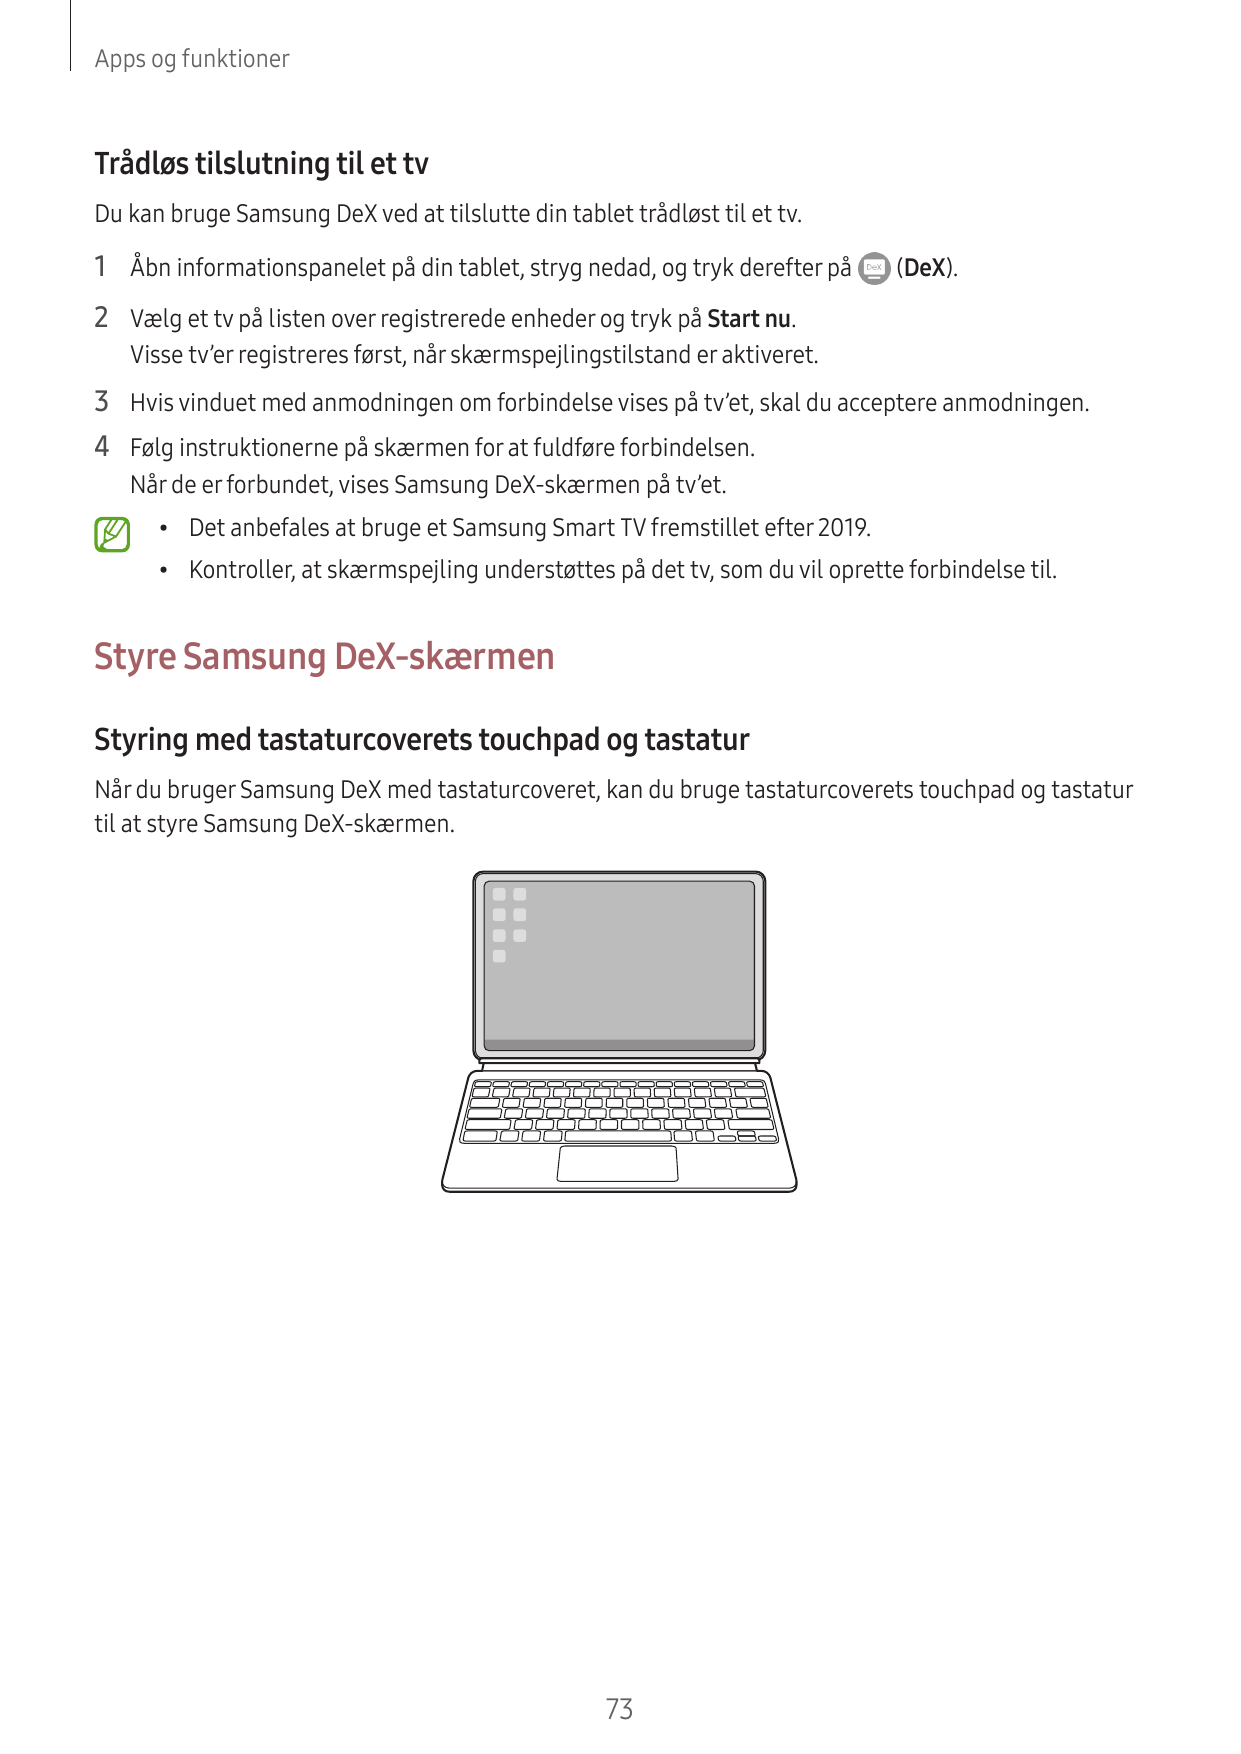 Apps og funktionerTrådløs tilslutning til et tvDu kan bruge Samsung DeX ved at tilslutte din tablet trådløst til et tv.1 Åbn inf